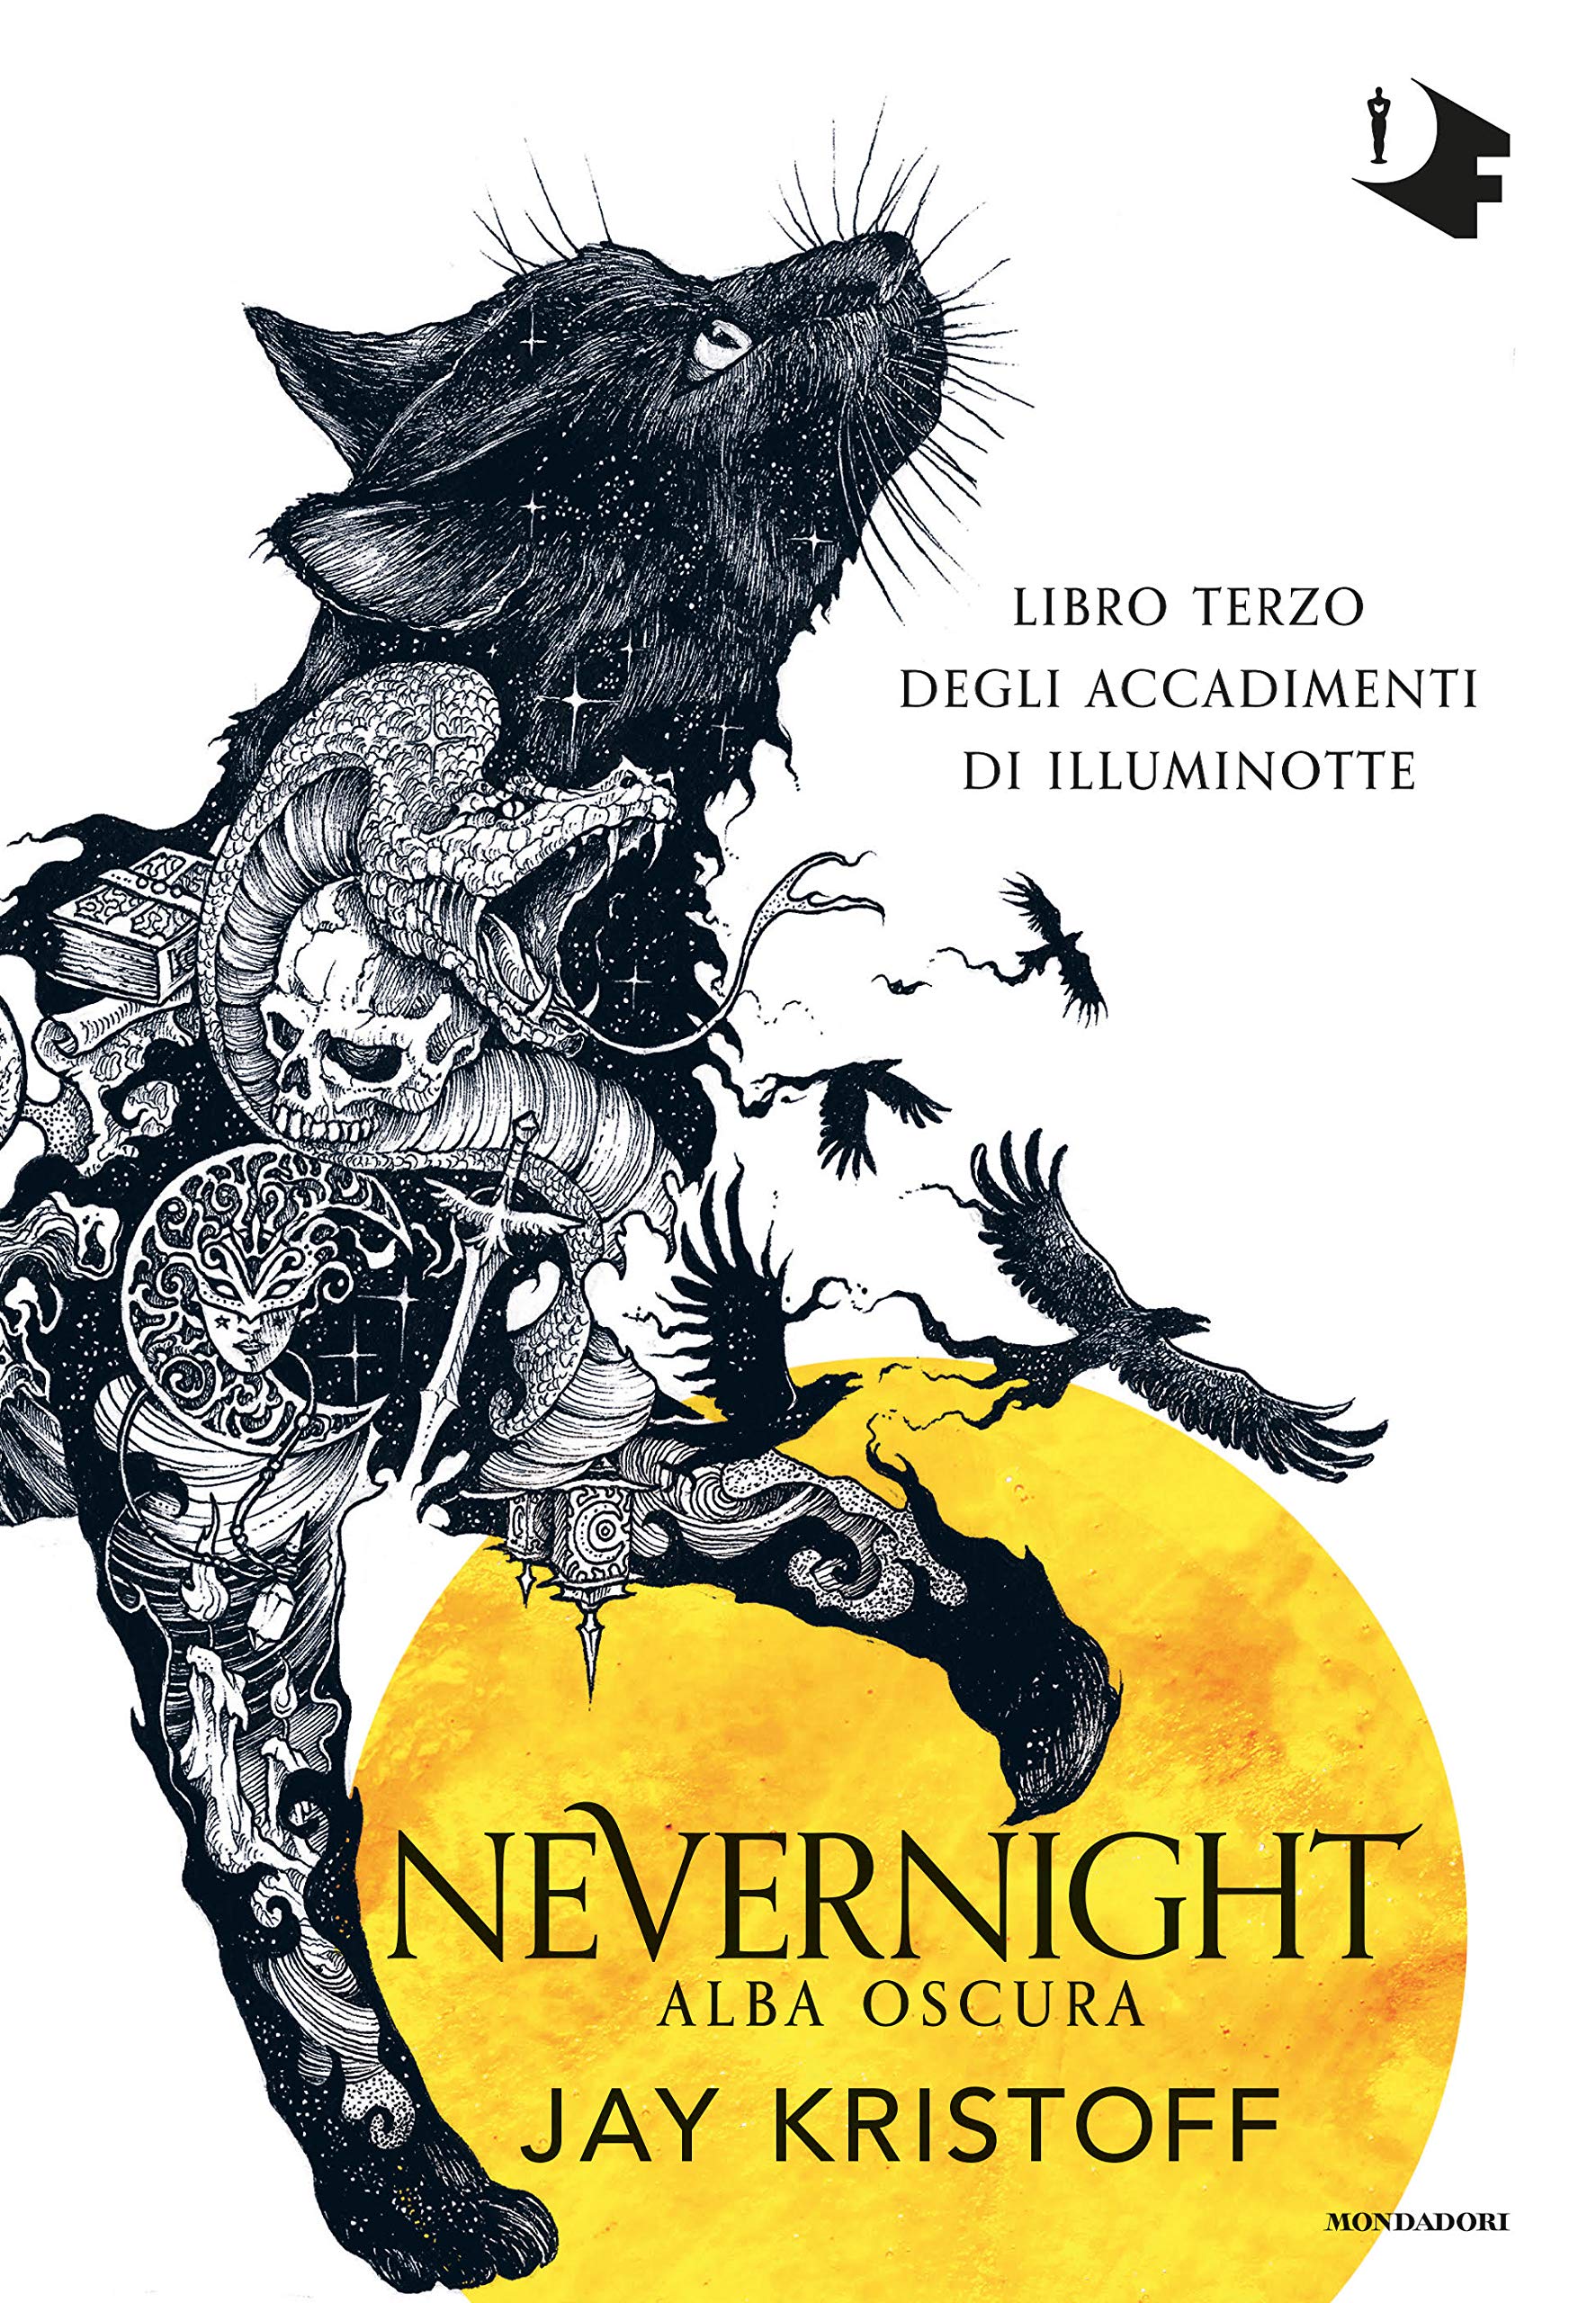 Nevernight. Alba oscura (Libro terzo degli accadimenti di Illuminotte)